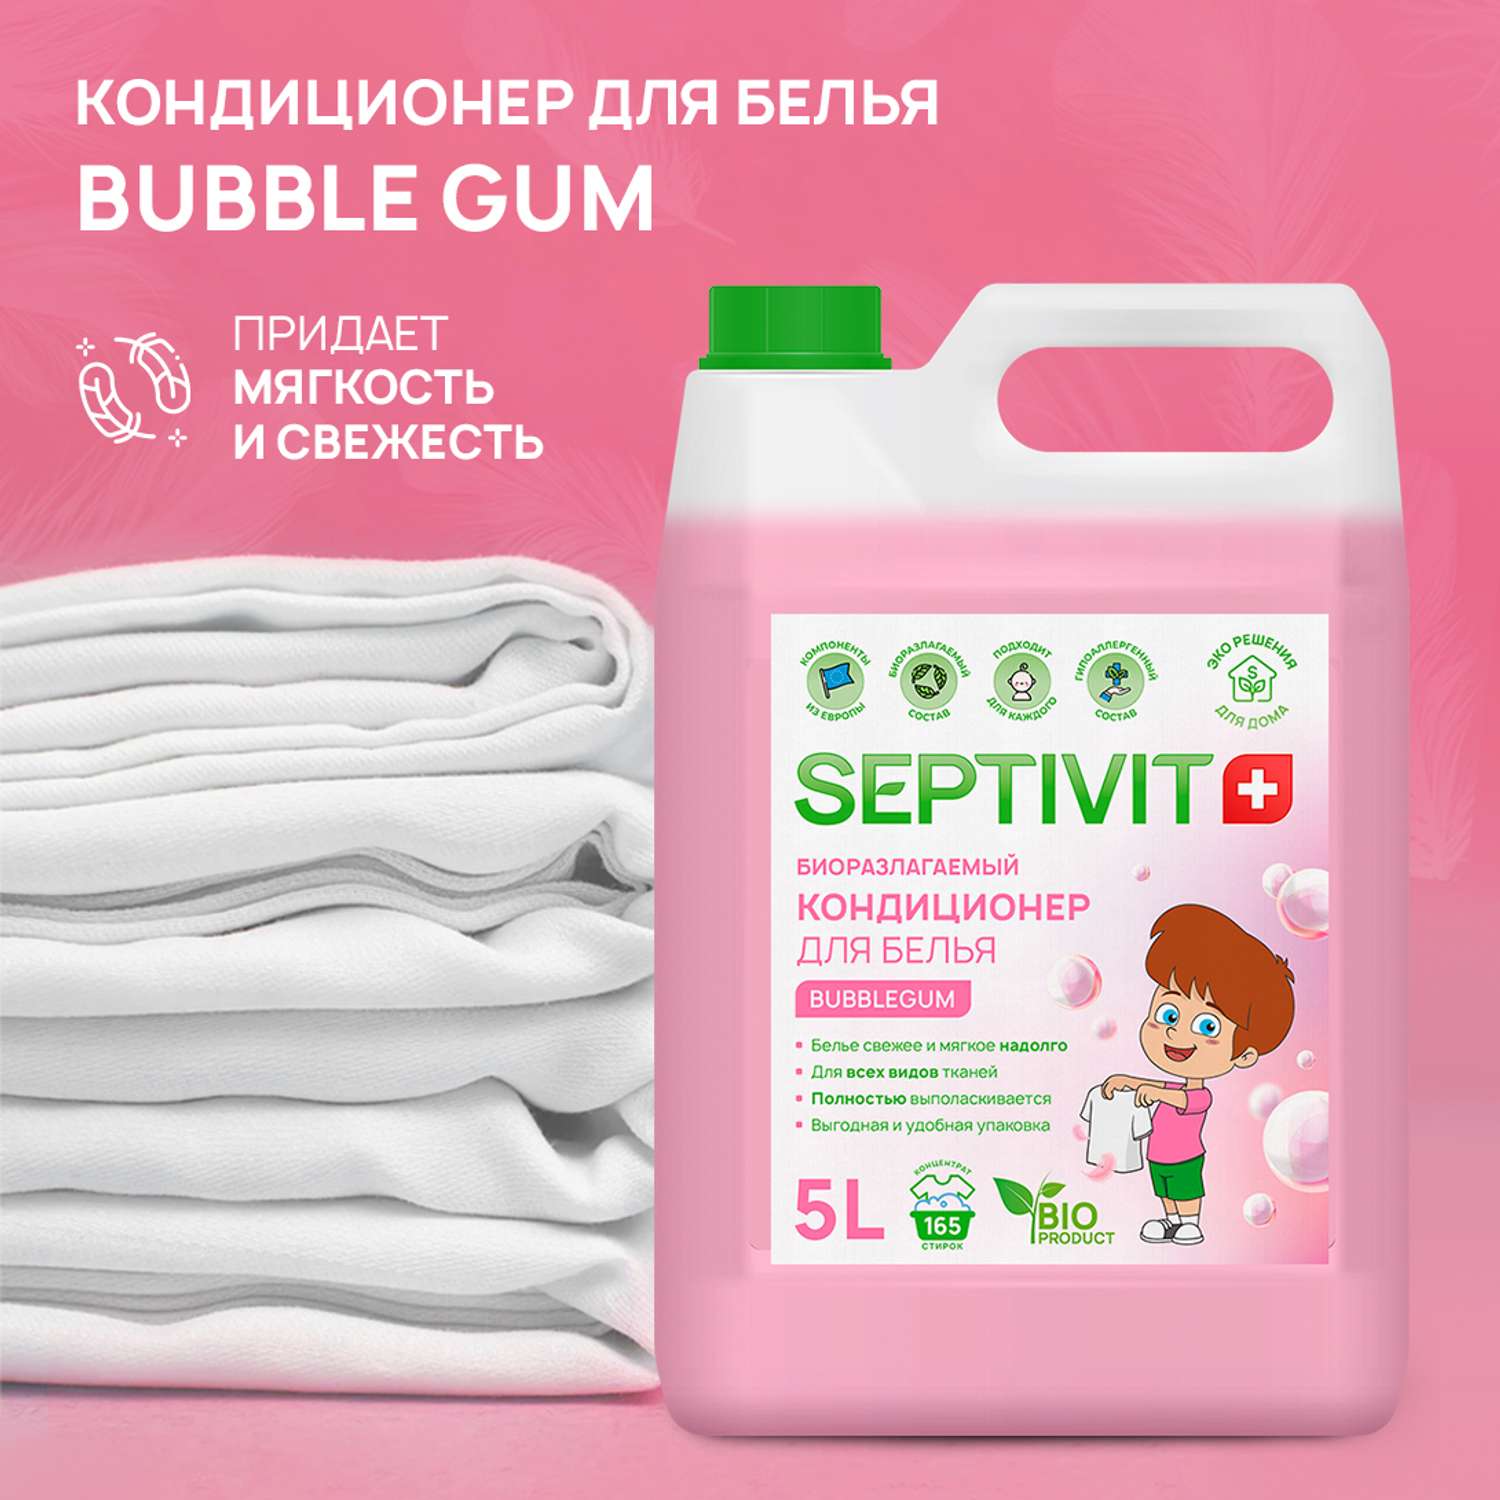 Кондиционер для белья SEPTIVIT Premium 5л с ароматом Bubble gum - фото 4